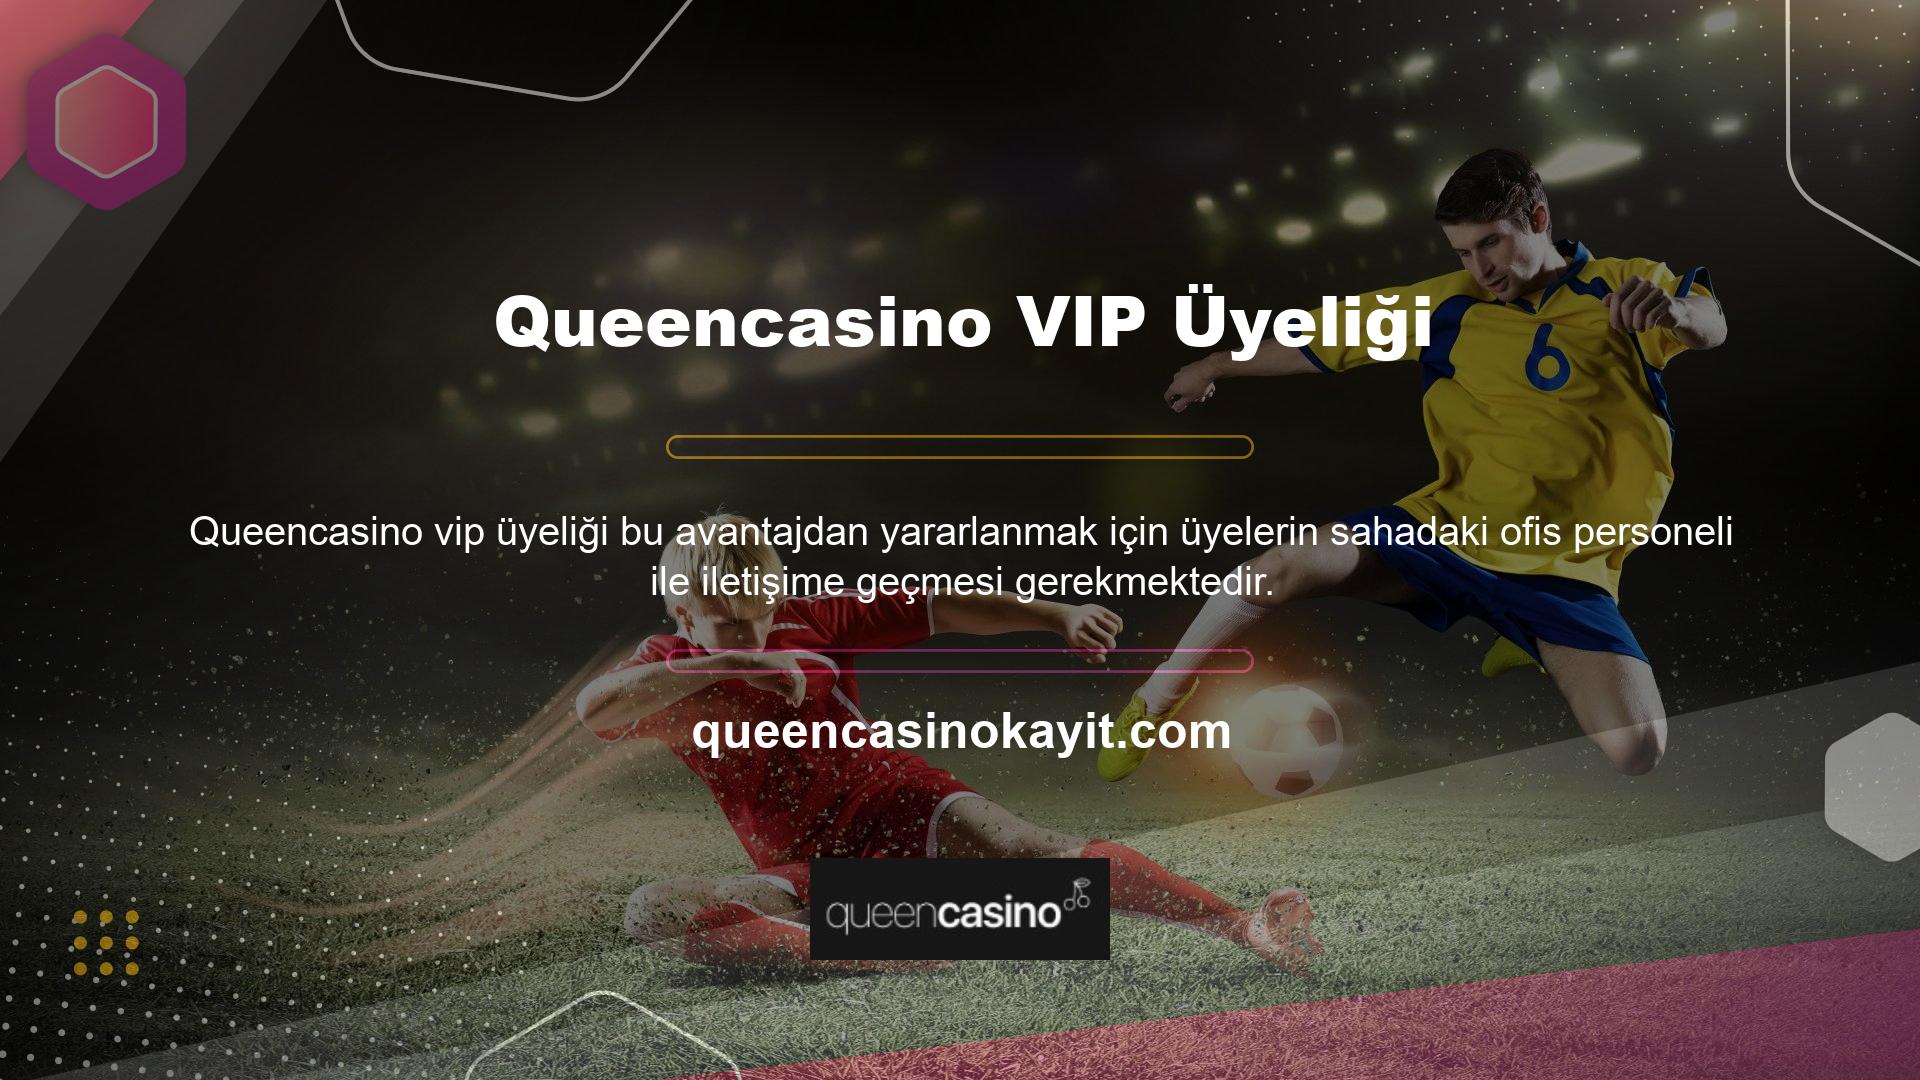 Queencasino yeni sahibine VIP hesabınızı kullanarak üye olarak katılmak istediğiniz bildirilmelidir